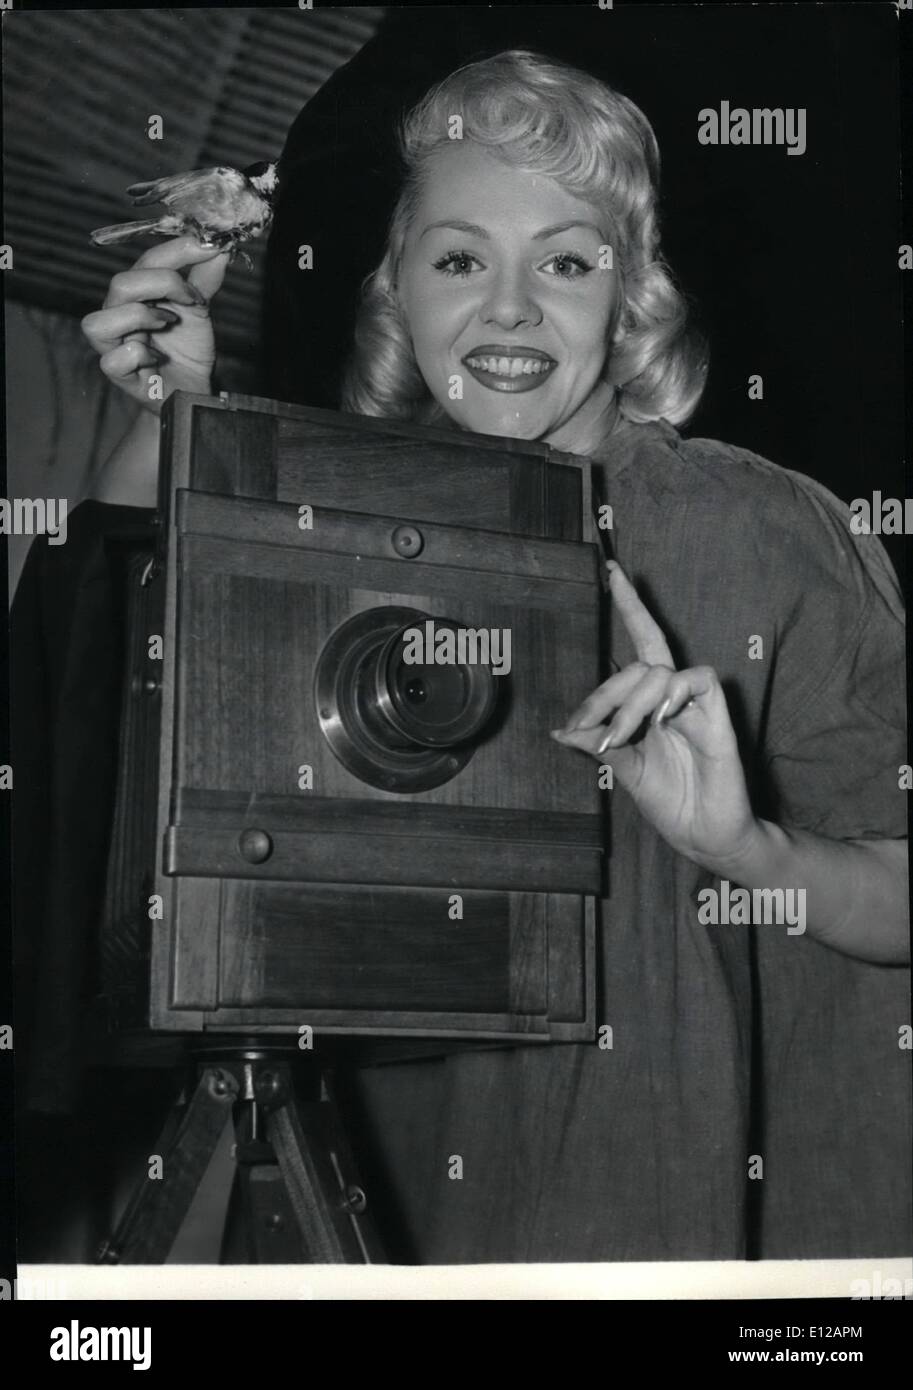 9. Dezember 2011 - Louis Daguerre Kamera von Starlet gezeigt: Te jährliche Ausstellung von Fotografie in Paris eröffnete, heute. Bild zeigt: Vera Vlamont, eine Paris-Starlet, Anzeige eines Daguerres ersten Kameras auf der Messe gesehen. Stockfoto